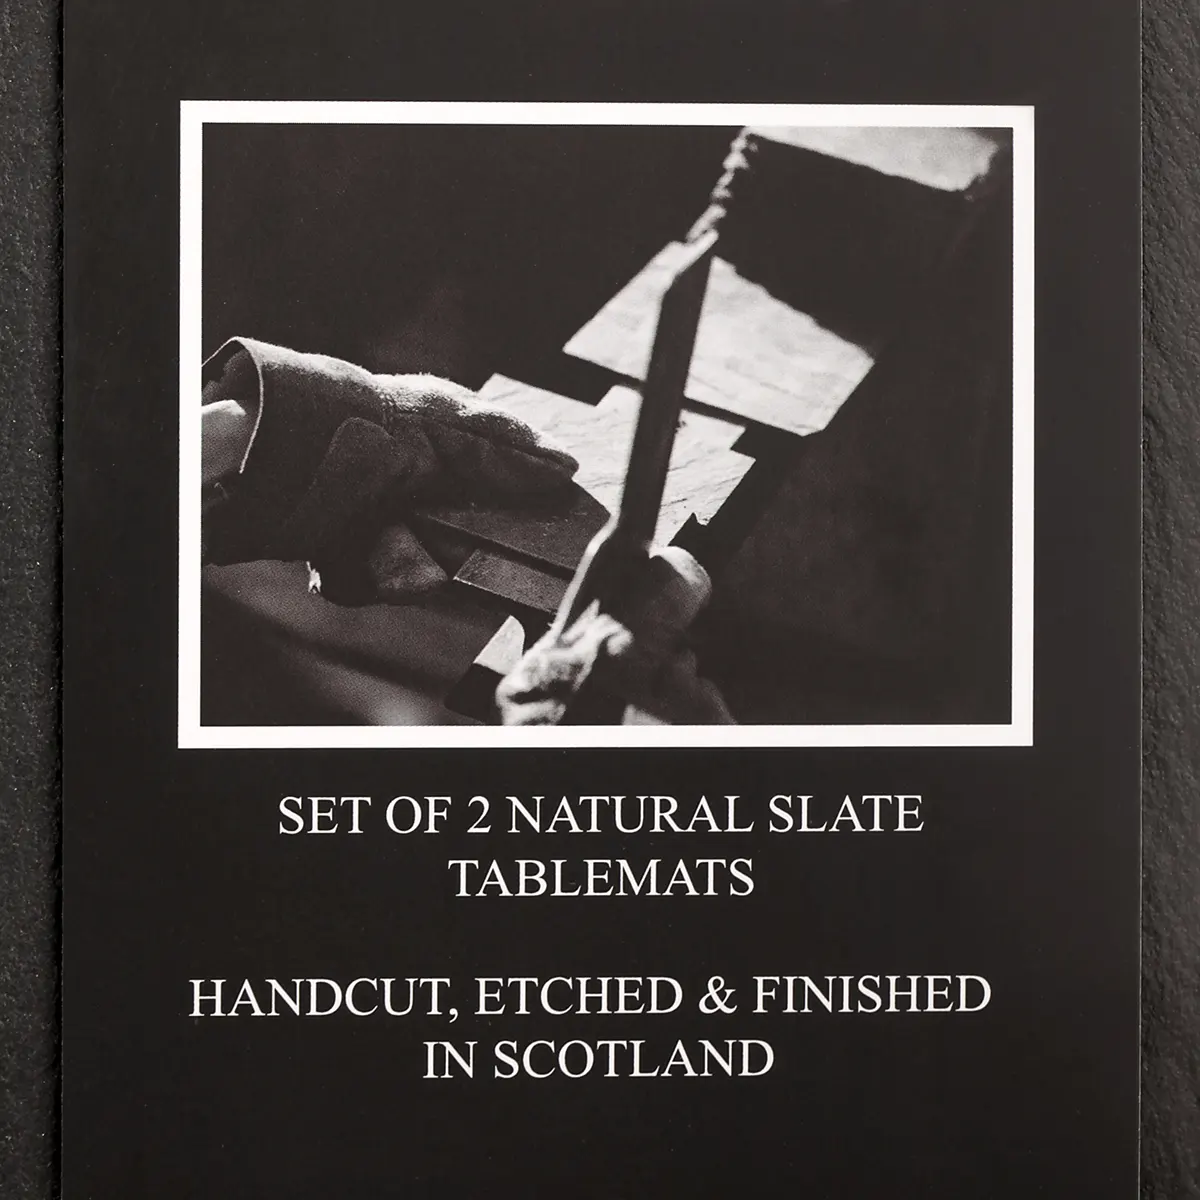 Scottish Thistle - 2er Platzset / Tischset handgefertigt aus Schiefer